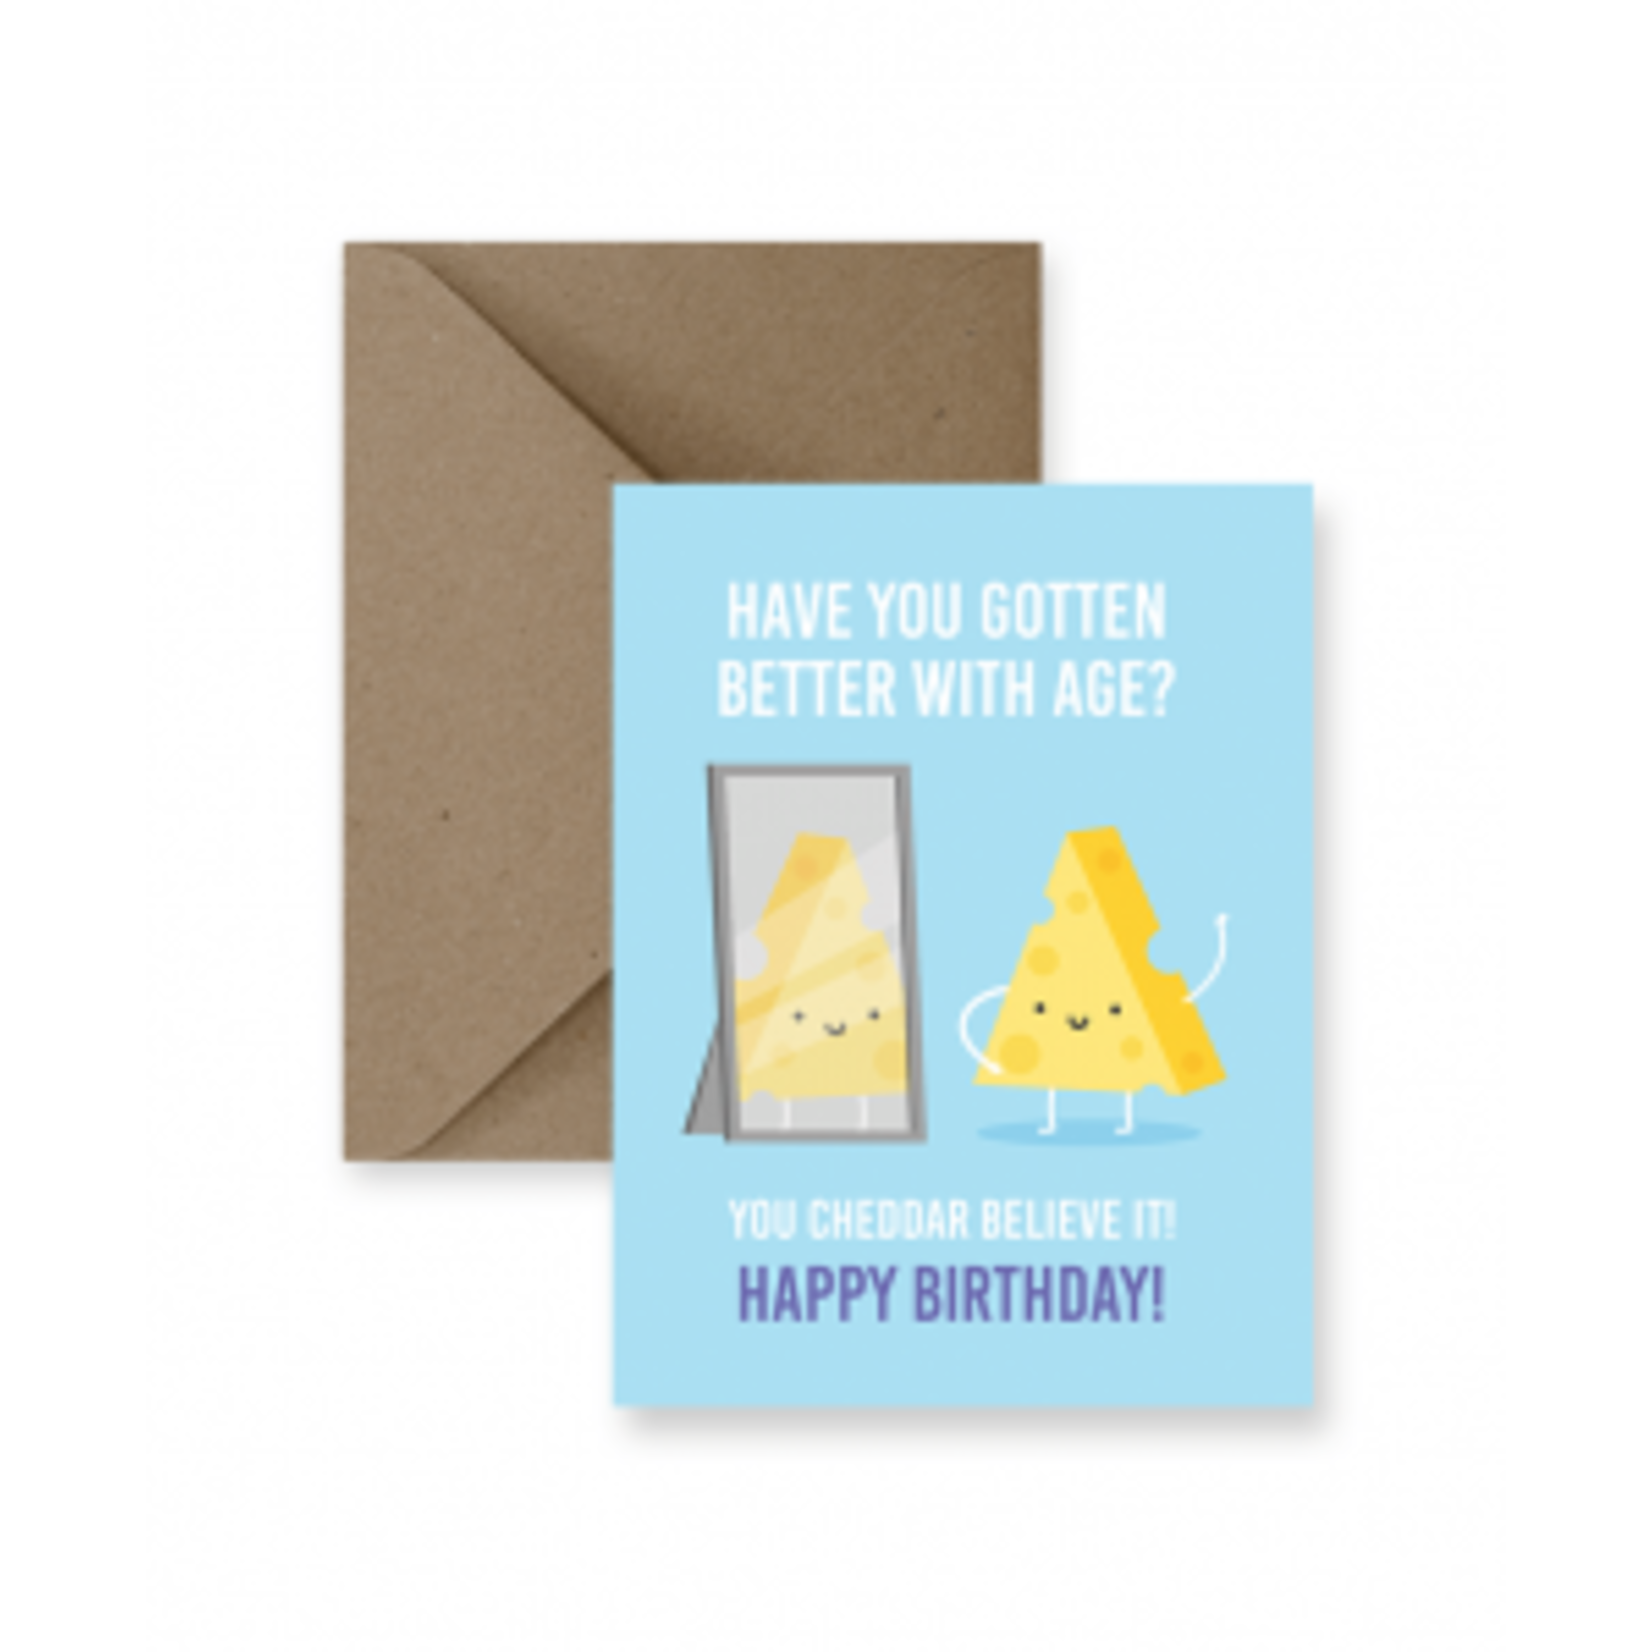 You cheddar believe it! Birthday Card